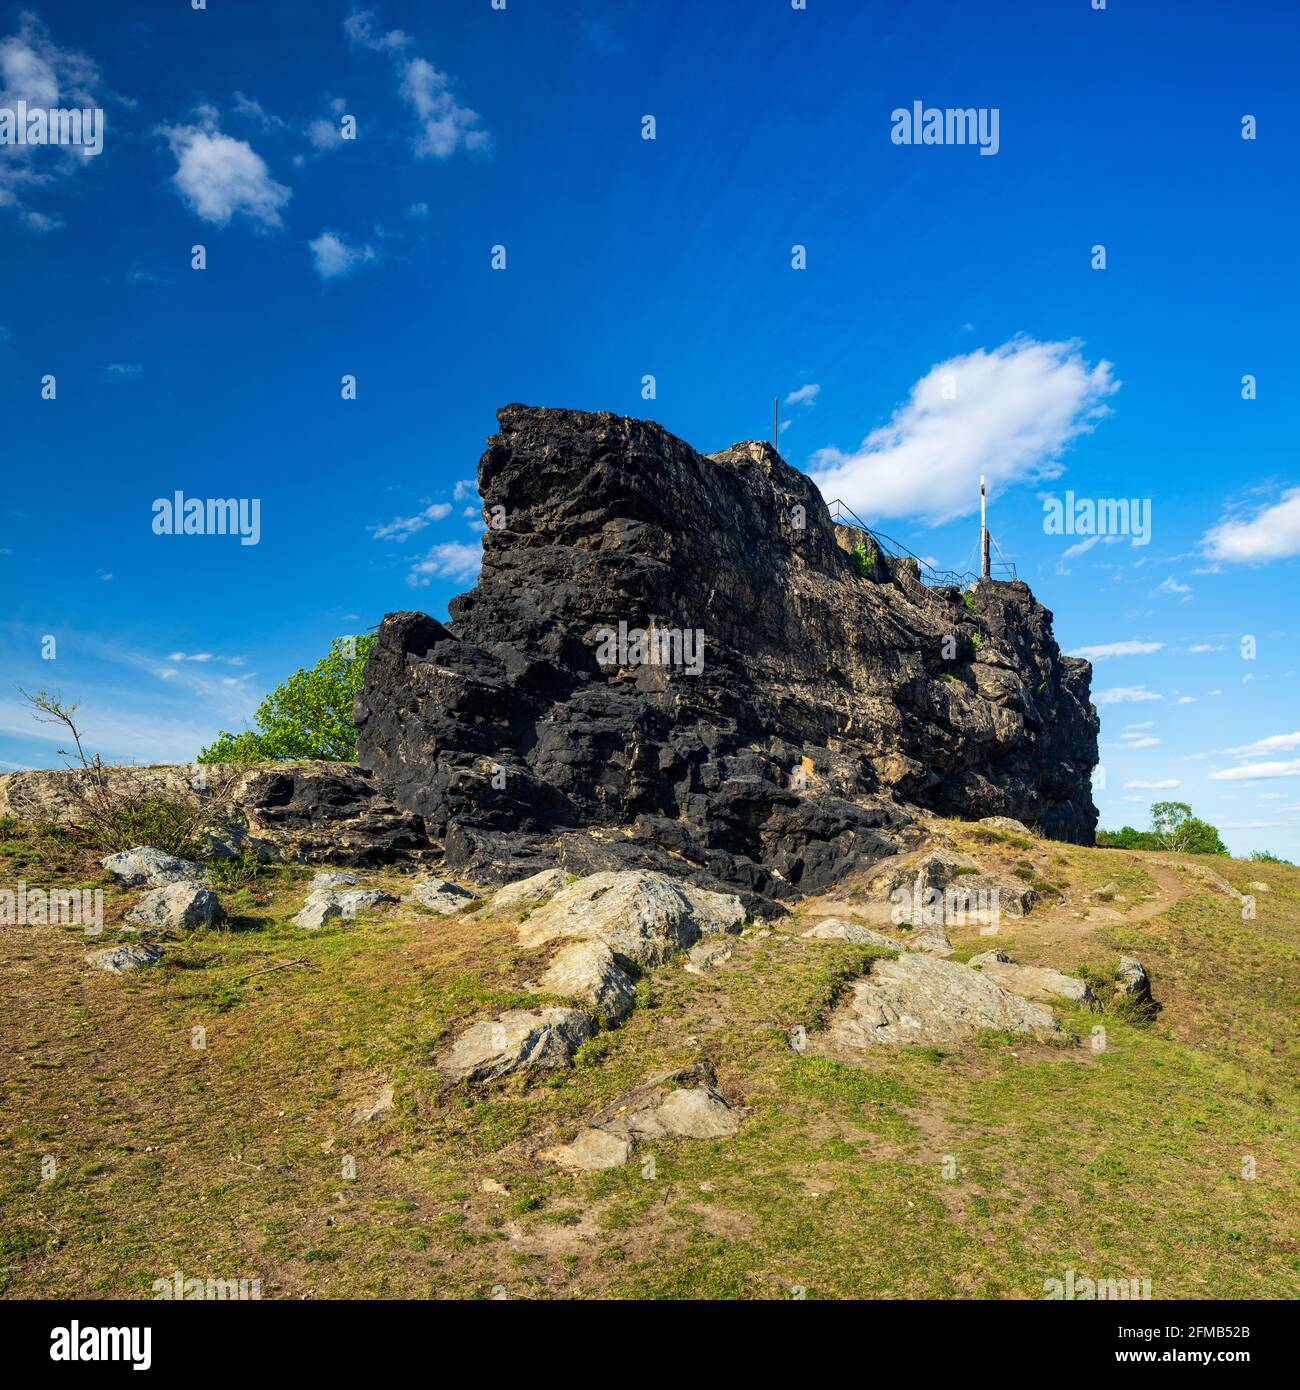 Germany, Saxony-Anhalt, Harz, Quedlinburg, Ballenstedt, landscape in the Harz foreland, Gegensteine rock formation Stock Photo